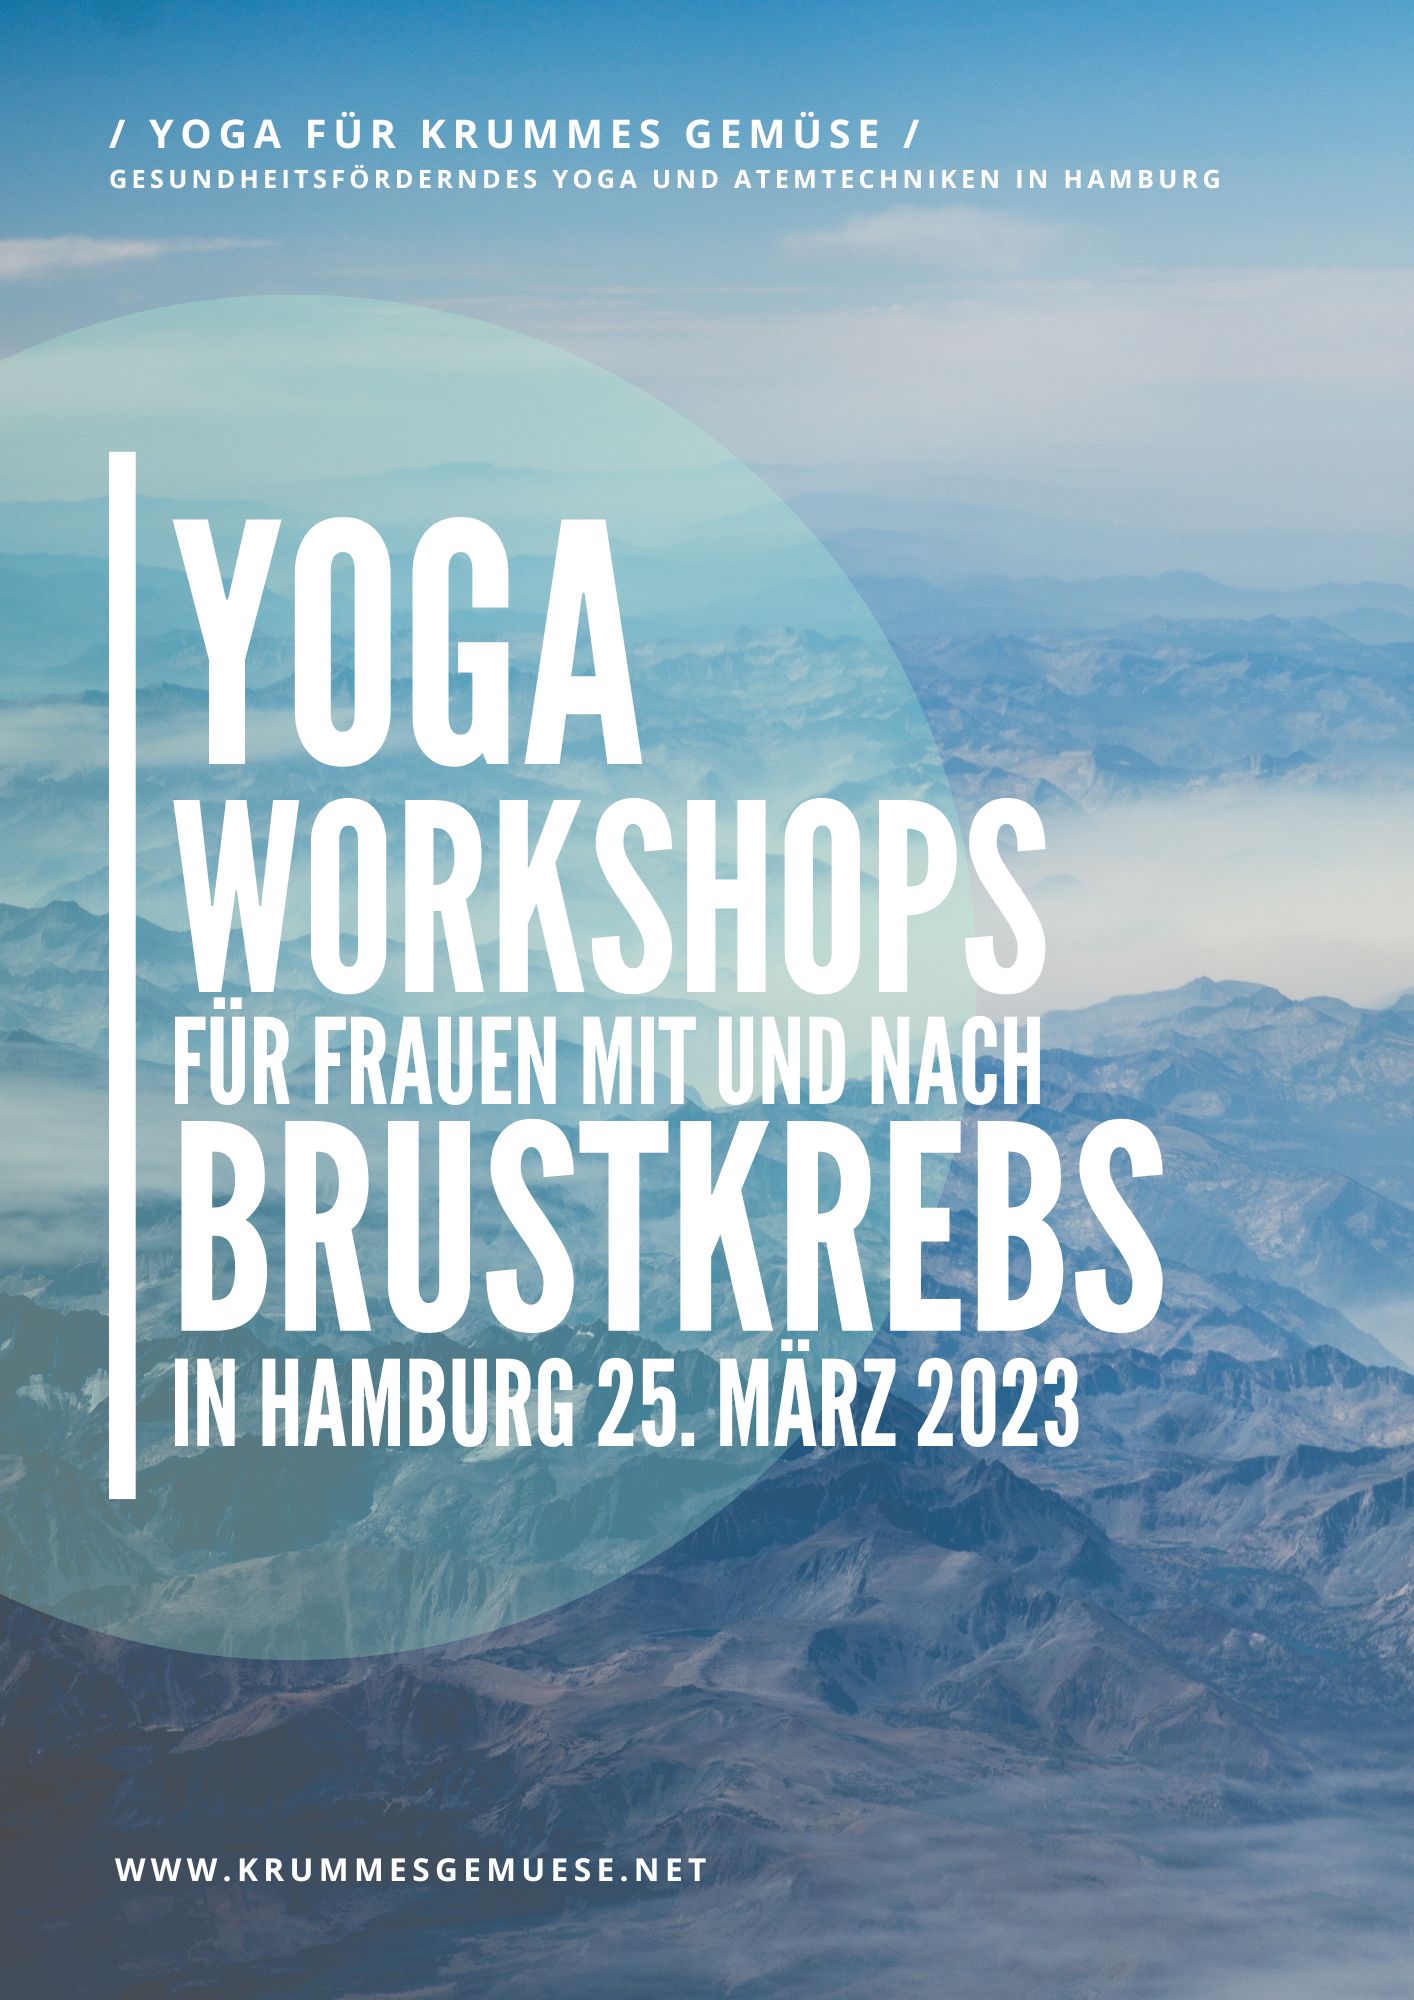 Yoga Workshops für Frauen mit und nach Brustkrebs in Hamburg